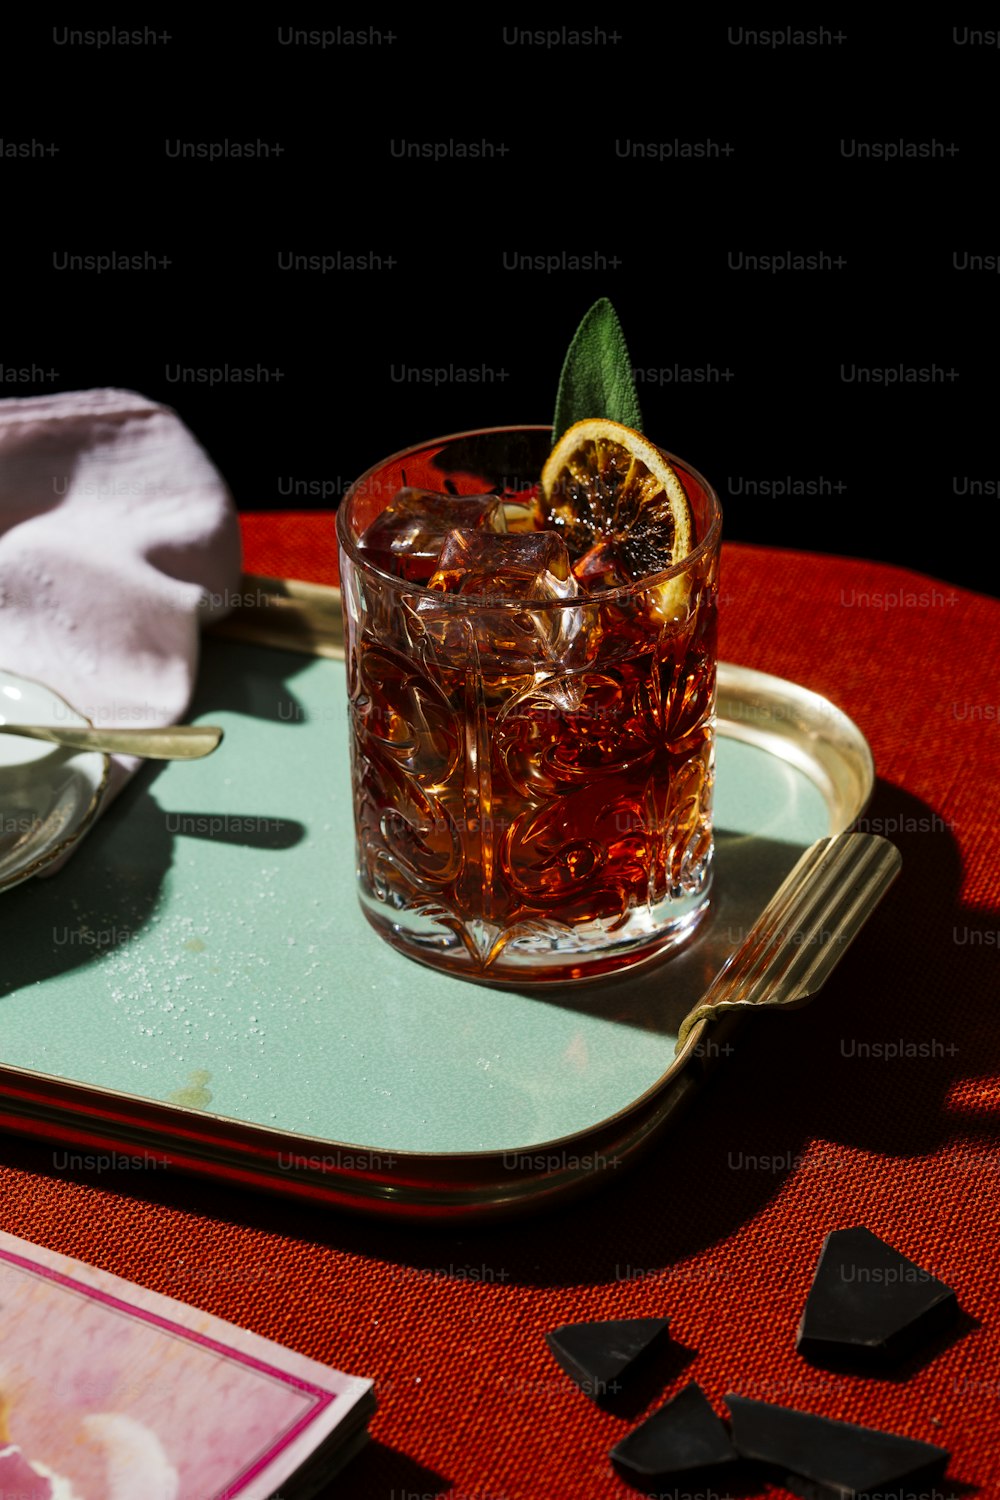 Negroni, ein Iba-Cocktail, mit 1/3 Gin, 1/3 Bitter, 1/3 Vermut, im farbenfrohen und reichen zeitgenössischen Stil.